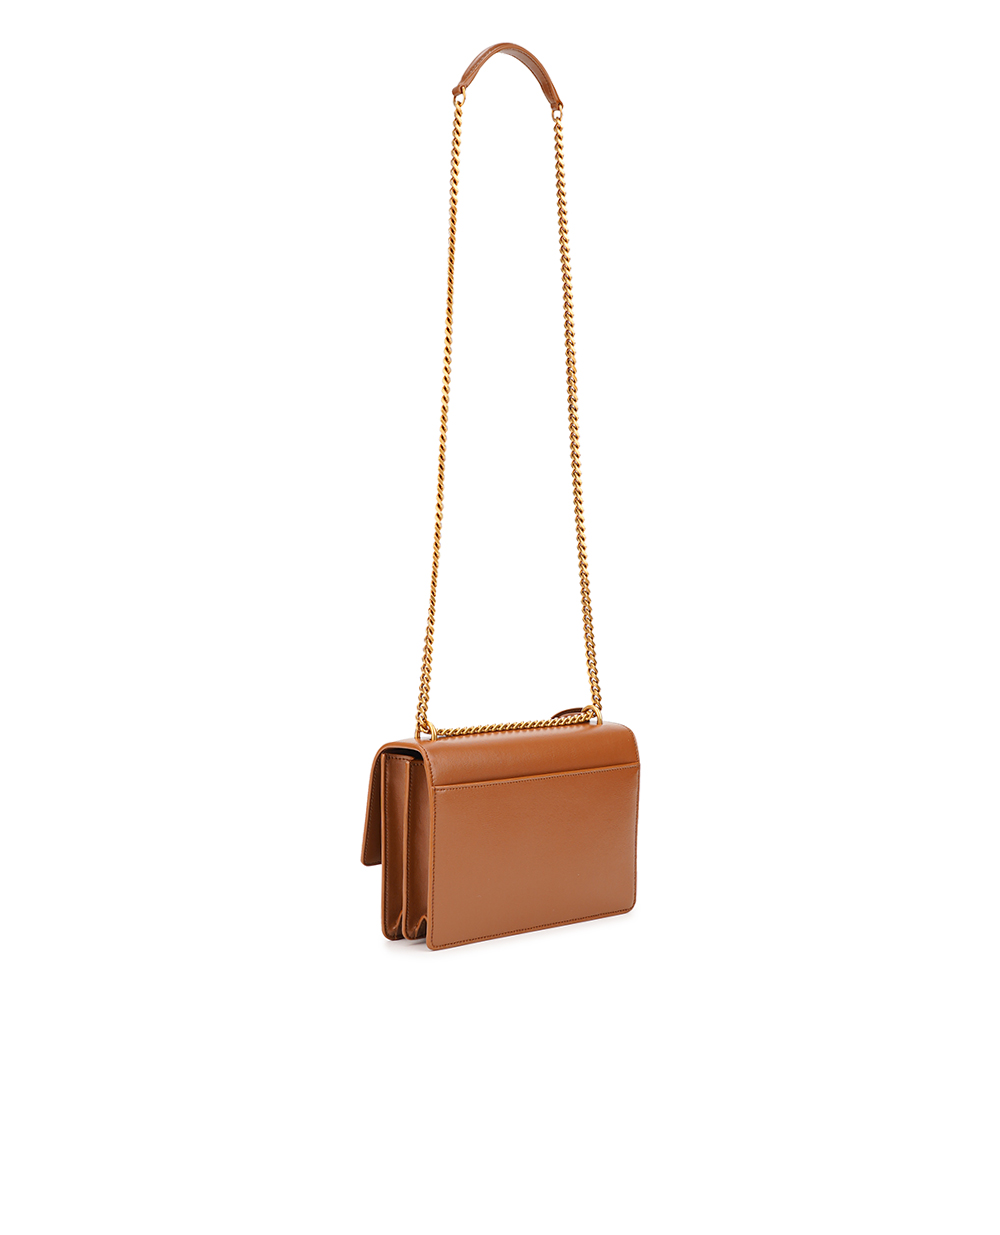 Кожаная сумка Sunset Medium Saint Laurent 442906-D420W, коричневый цвет • Купить в интернет-магазине Kameron